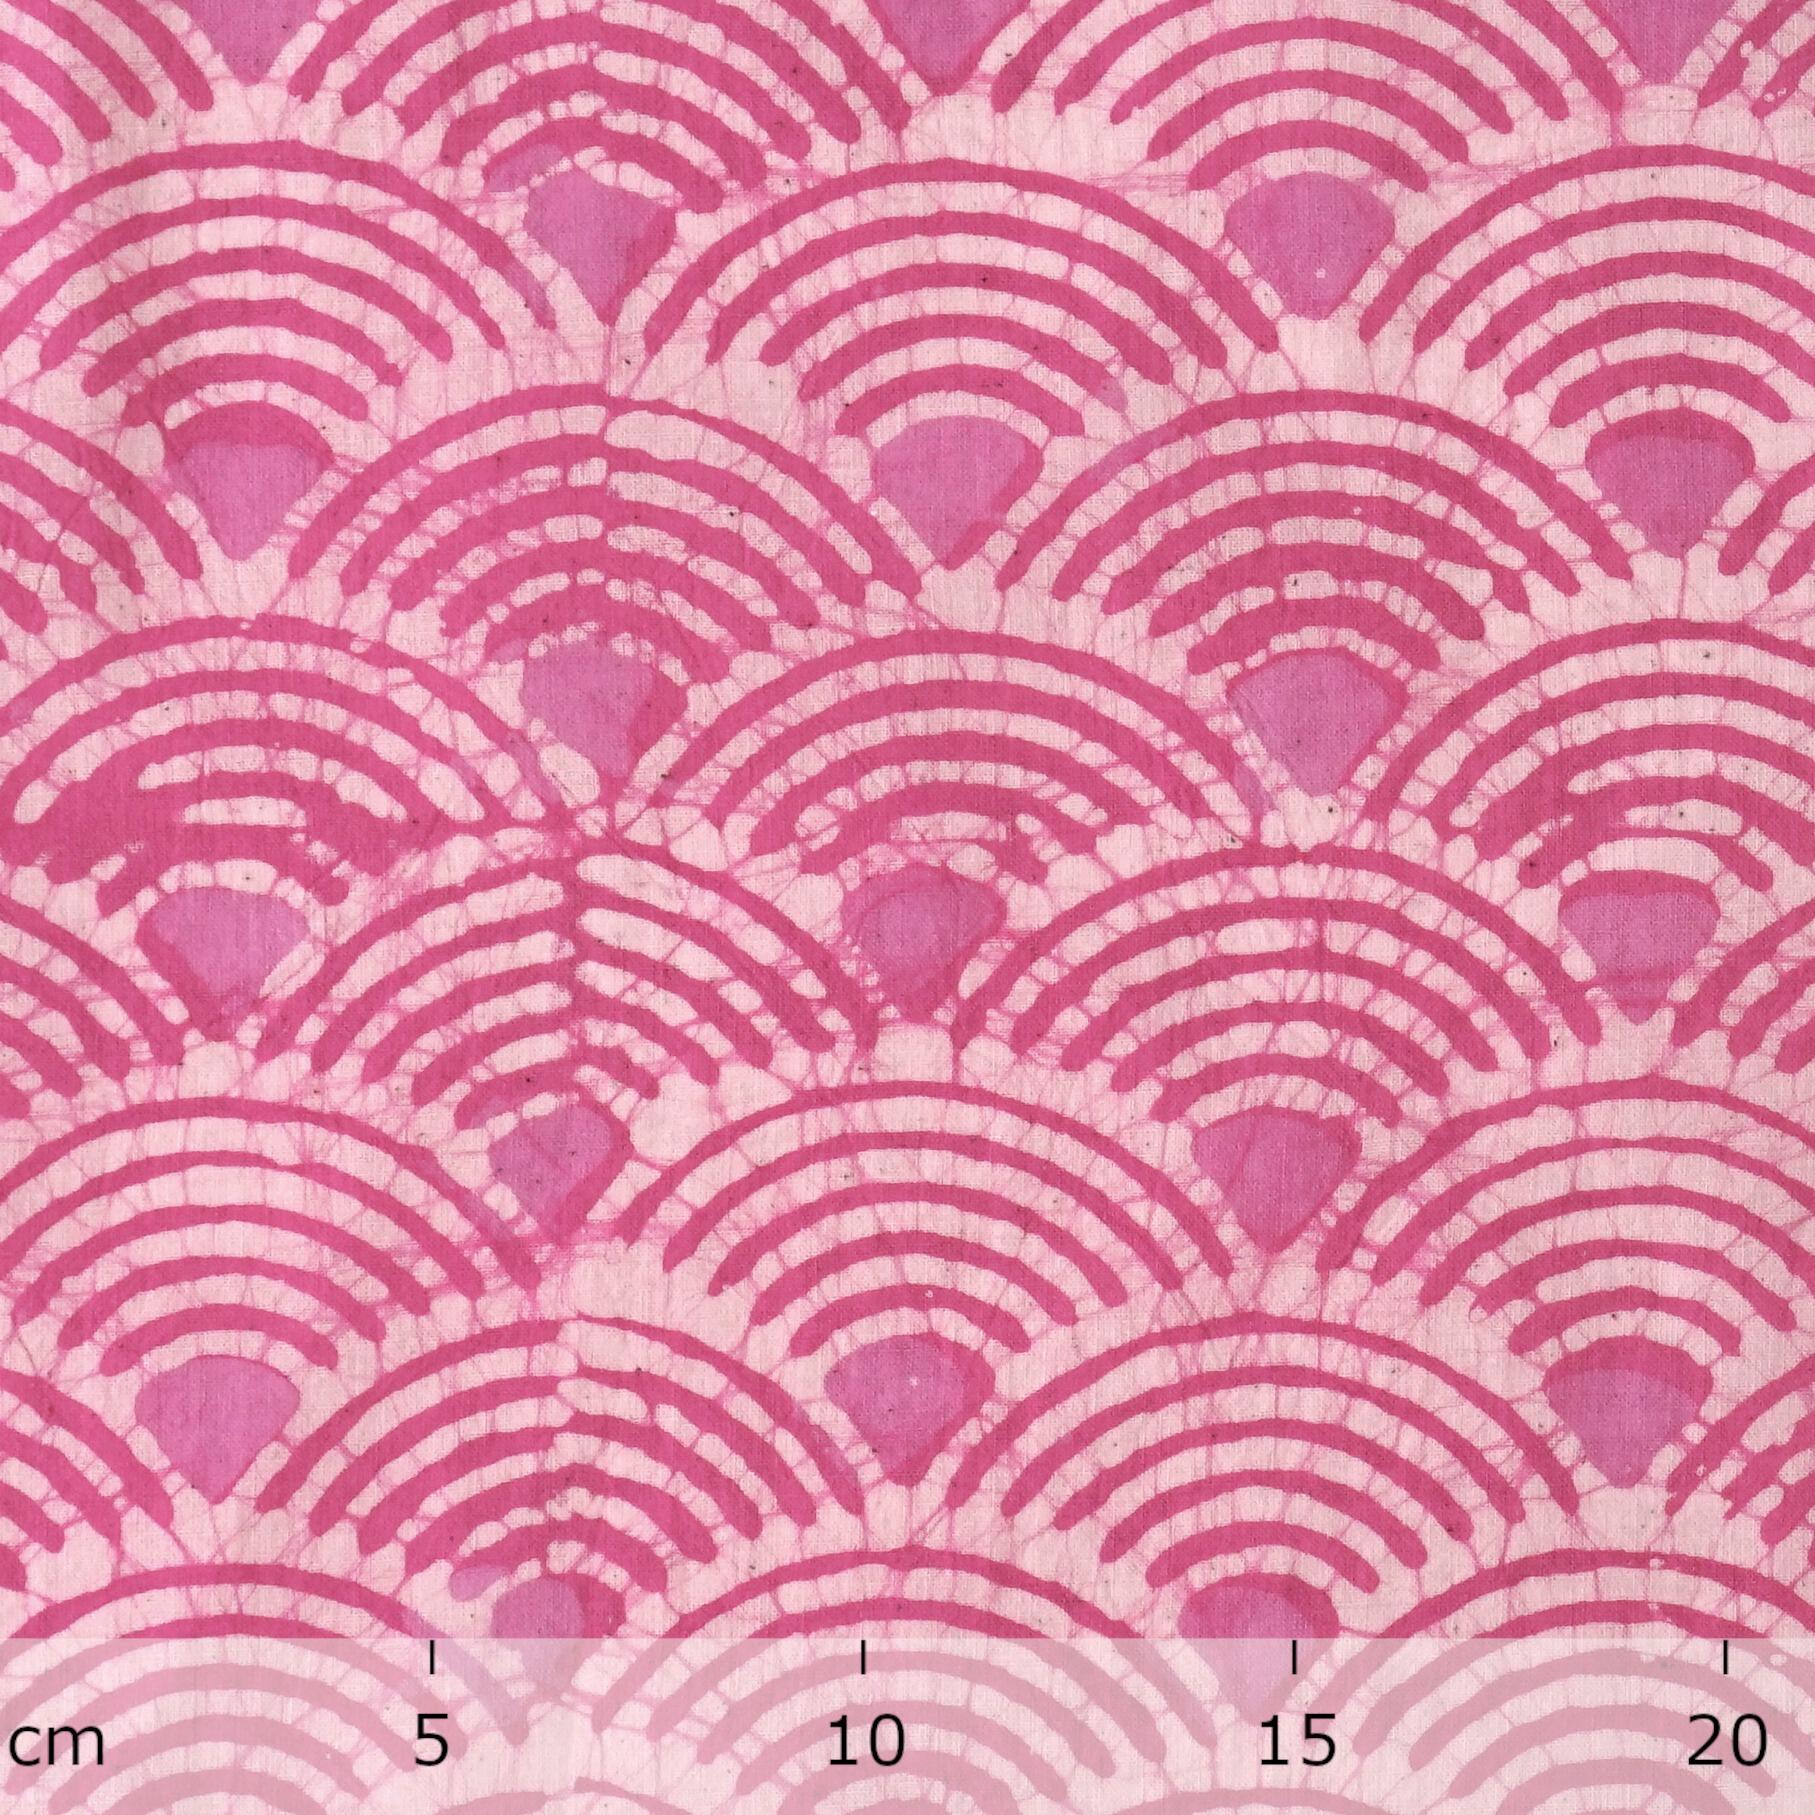 100% Block-Printed Batik Cotton Fabric From India - Batik - Pink Red Scales - Ruler